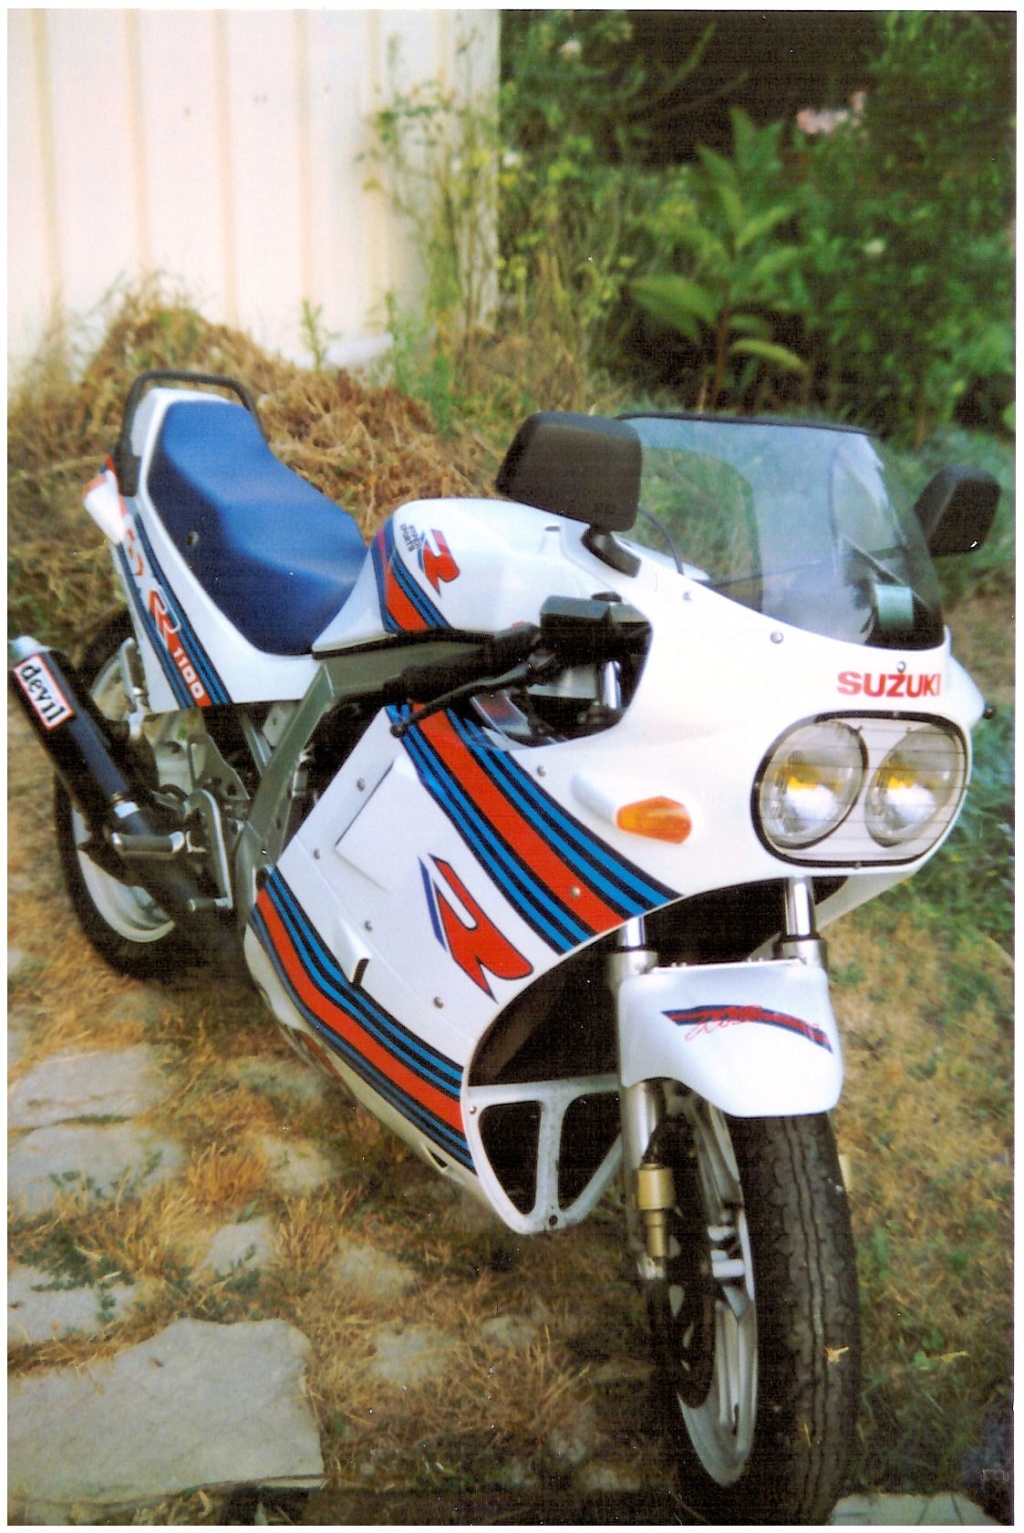 45 ans de moto et dernière acquisition B-king 2010 Gsxr-m11